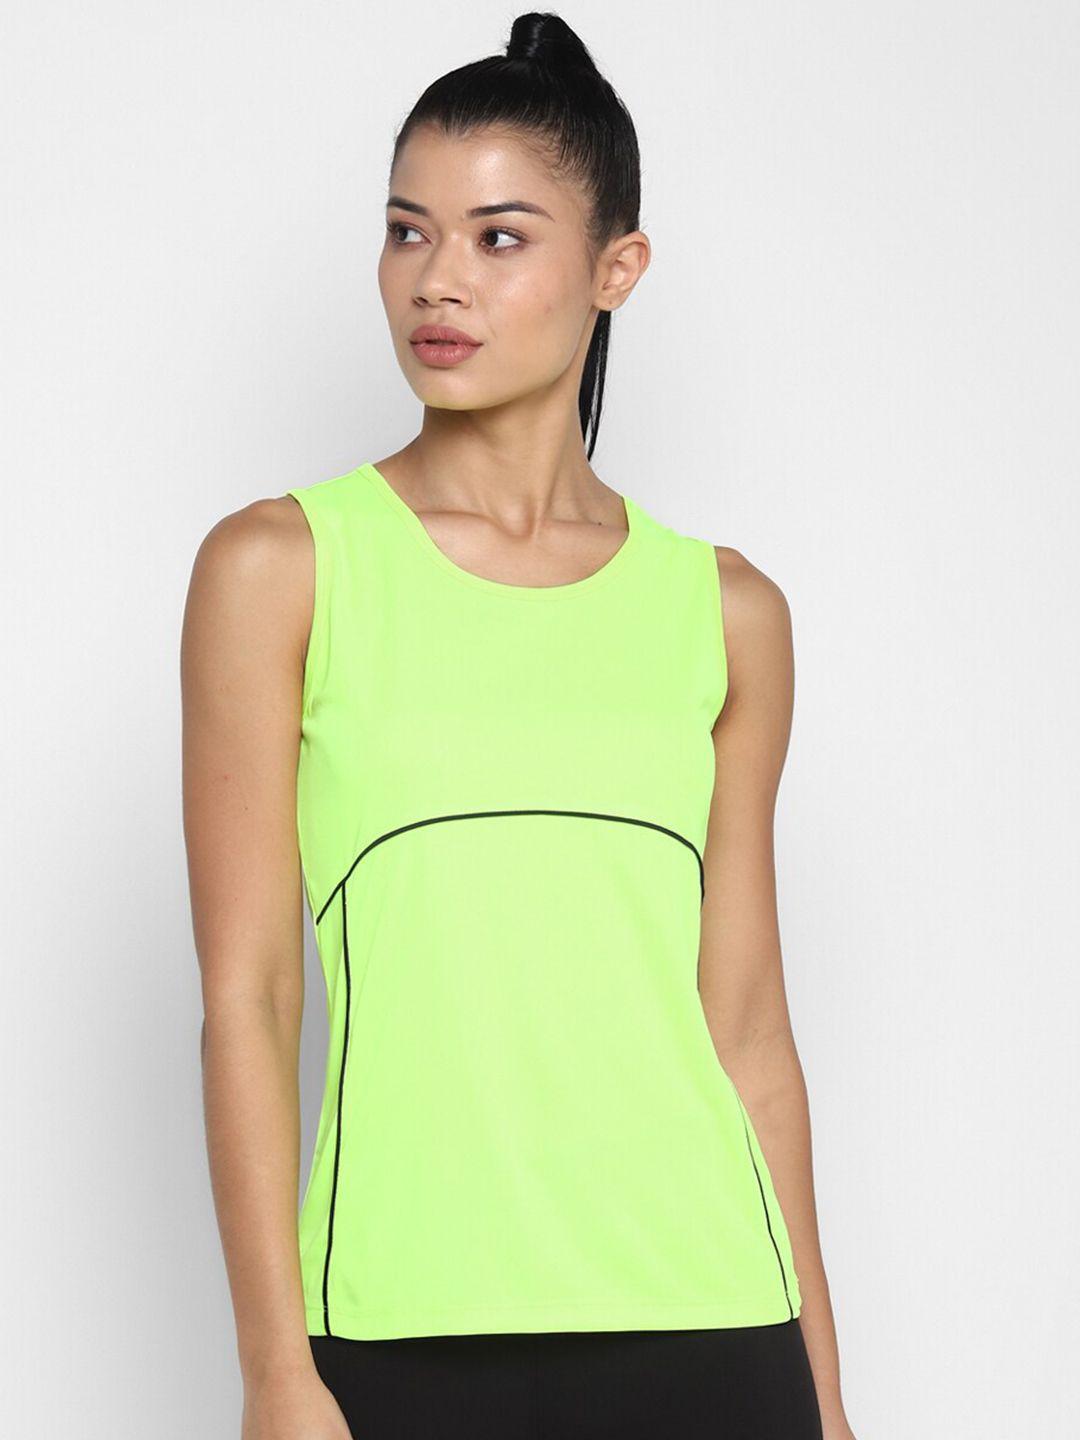 off-limits-women-fluorescent-green-t-shirt